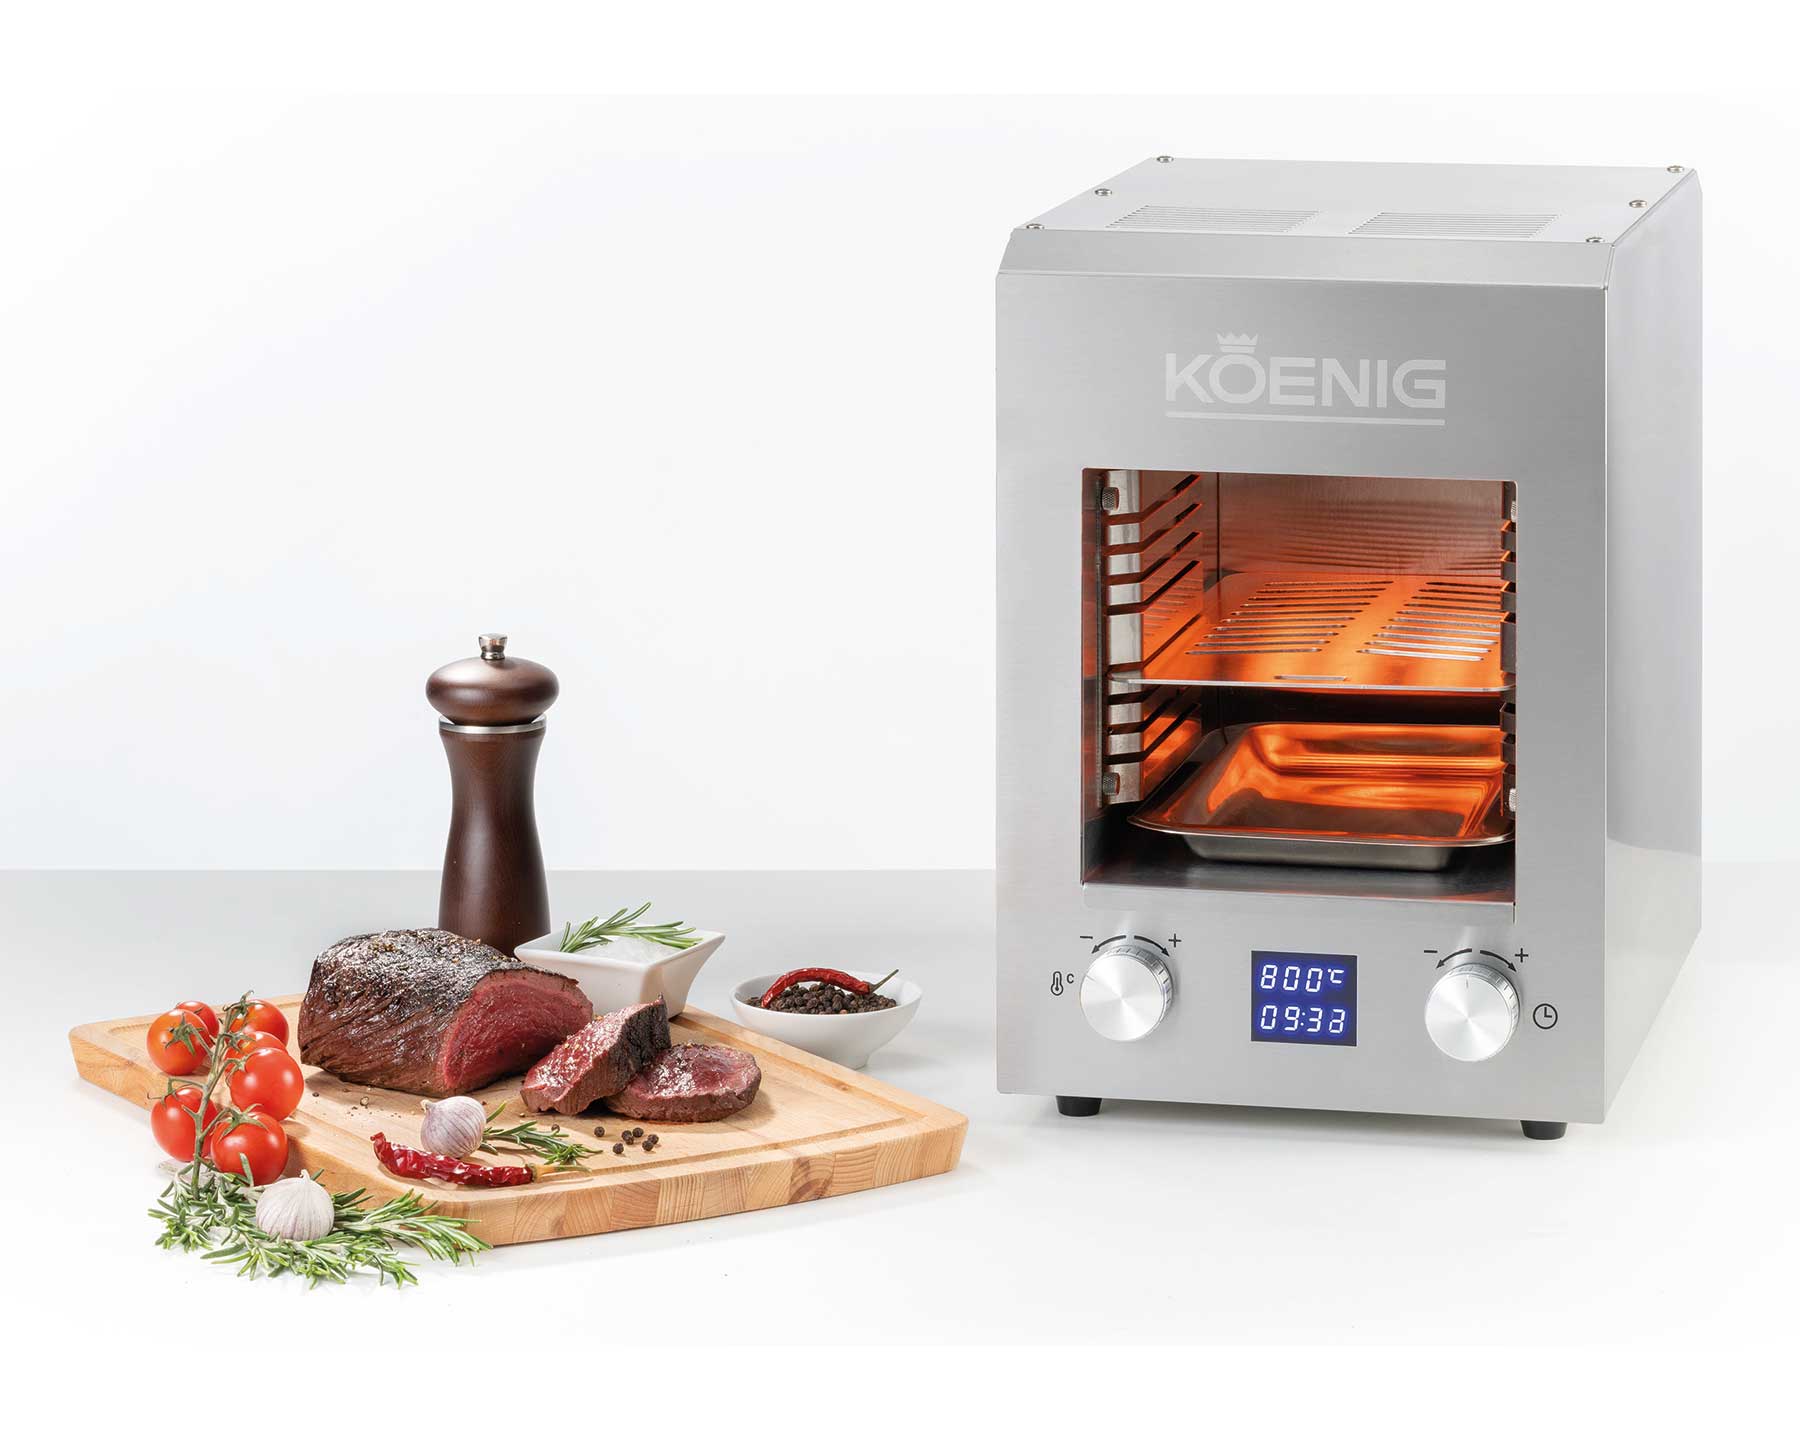 KOENIG Elektro Beef Grill - kitchen-more.ch, kostenloser Versand in der ganzen Schweiz